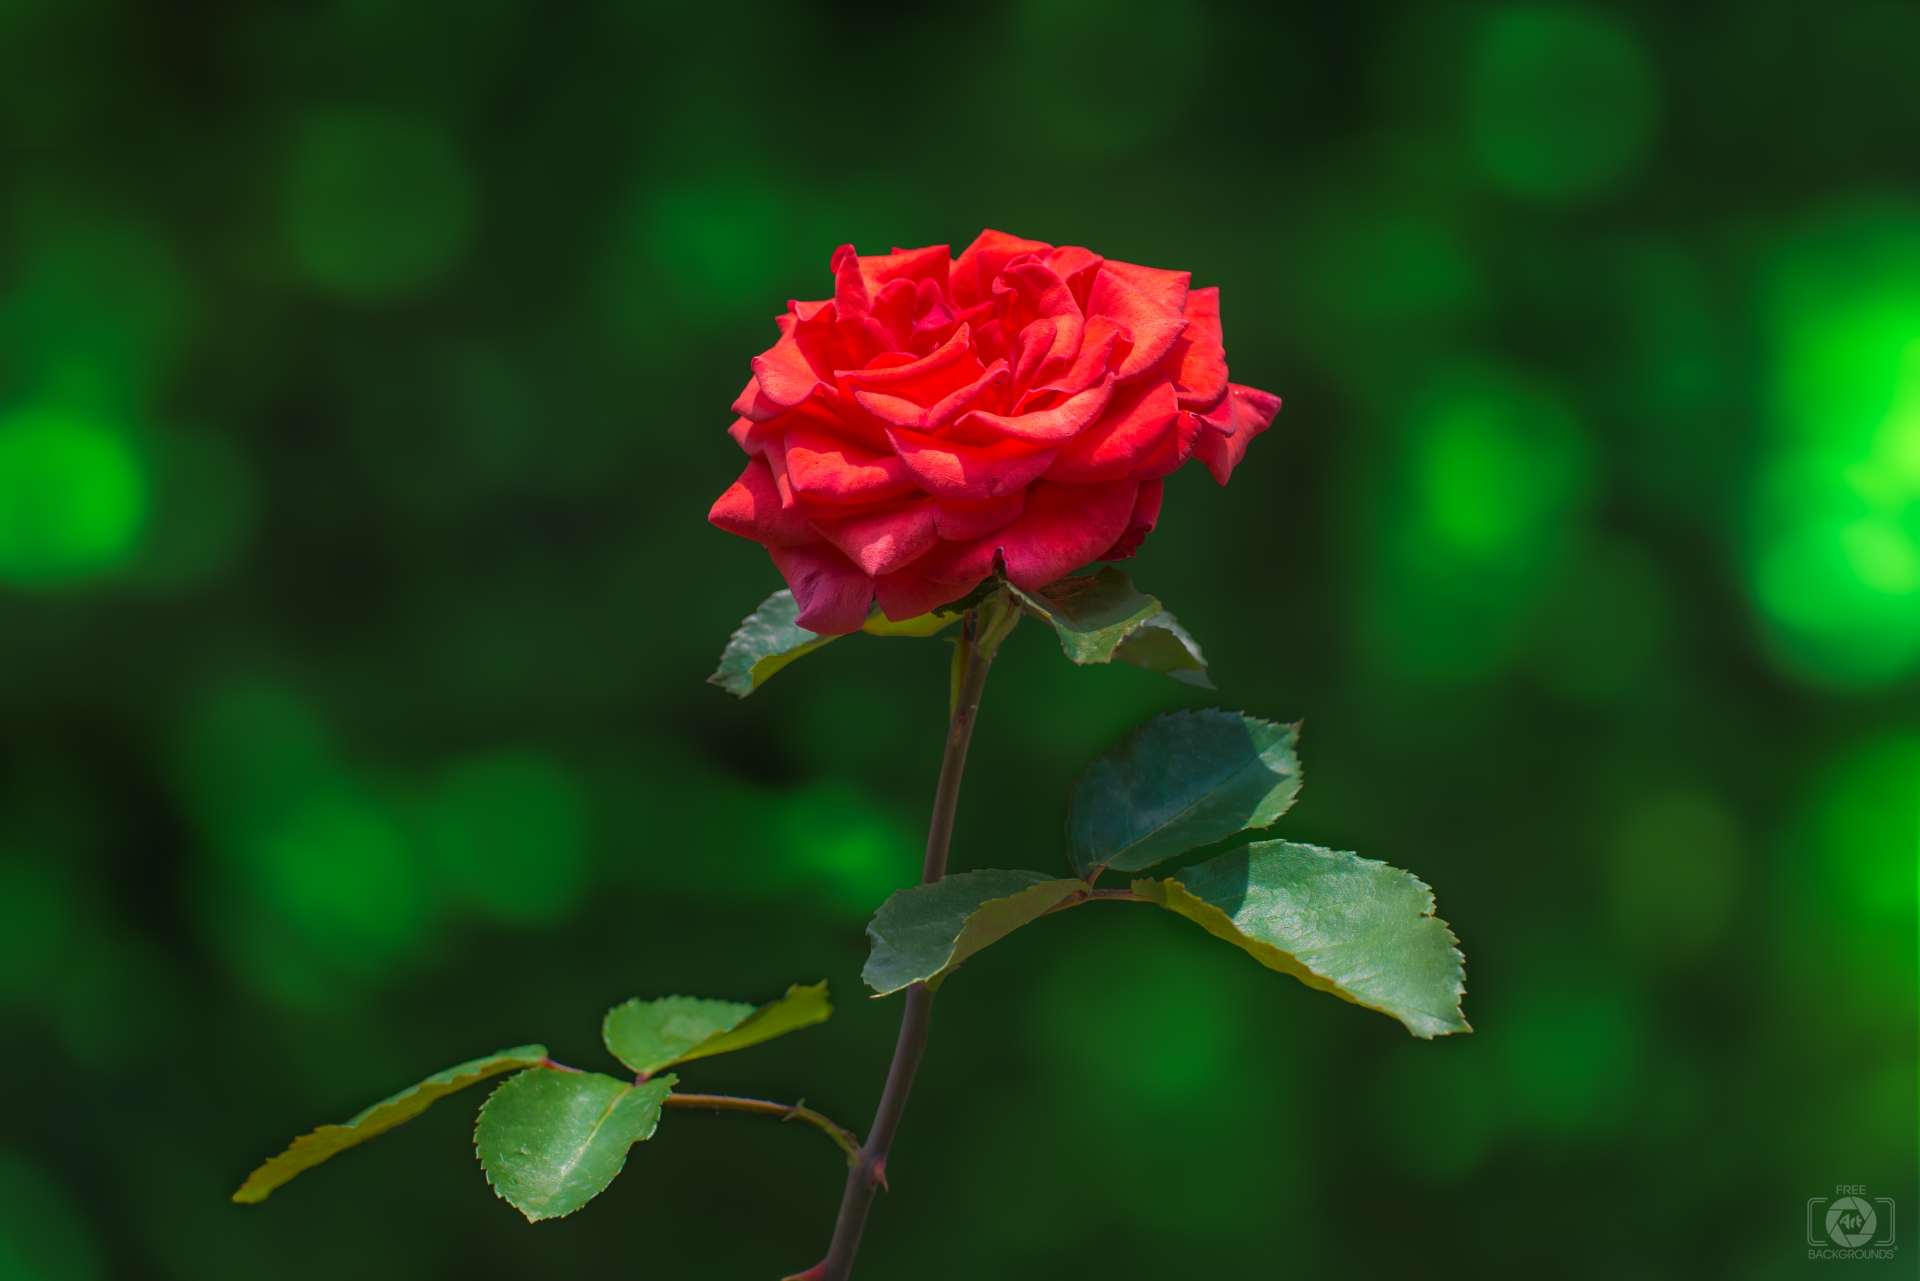 Hình nền miễn phí chất lượng cao với hoa hồng đỏ và nền xanh là lựa chọn hoàn hảo cho những ai yêu thích sự thanh lịch và sang trọng. Với gam màu tươi sáng và hình ảnh hoa hồng đầy lãng mạn, bạn sẽ chắc chắn sẽ không bao giờ muốn bỏ qua những hình nền này.